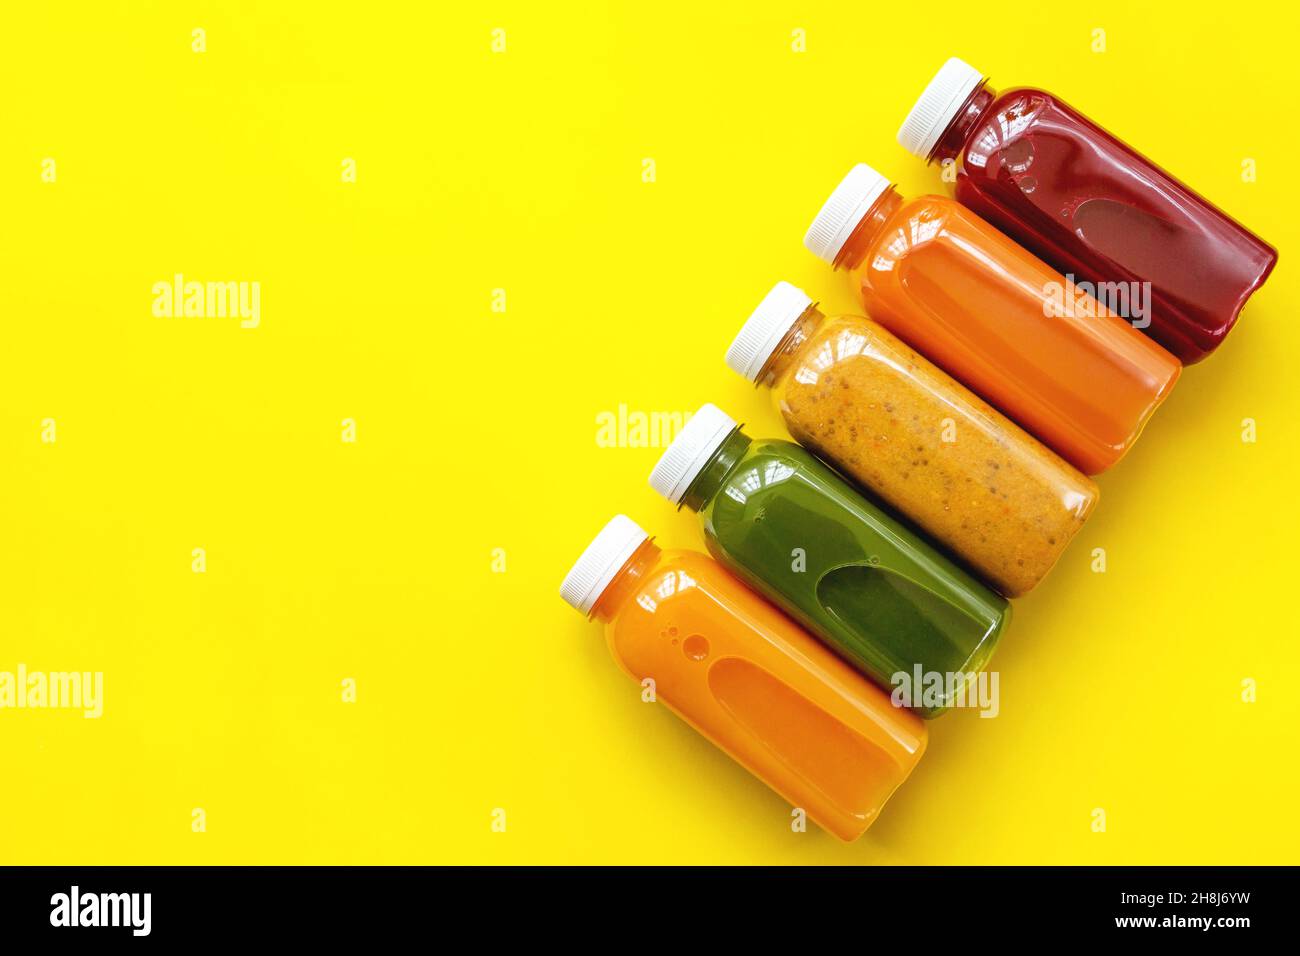 Zumos frescos o cócteles de frutas y verduras en botellas sobre fondo amarillo. El concepto de una dieta o dieta saludable. Ingredientes orgánicos frescos. Plano, vista superior Foto de stock